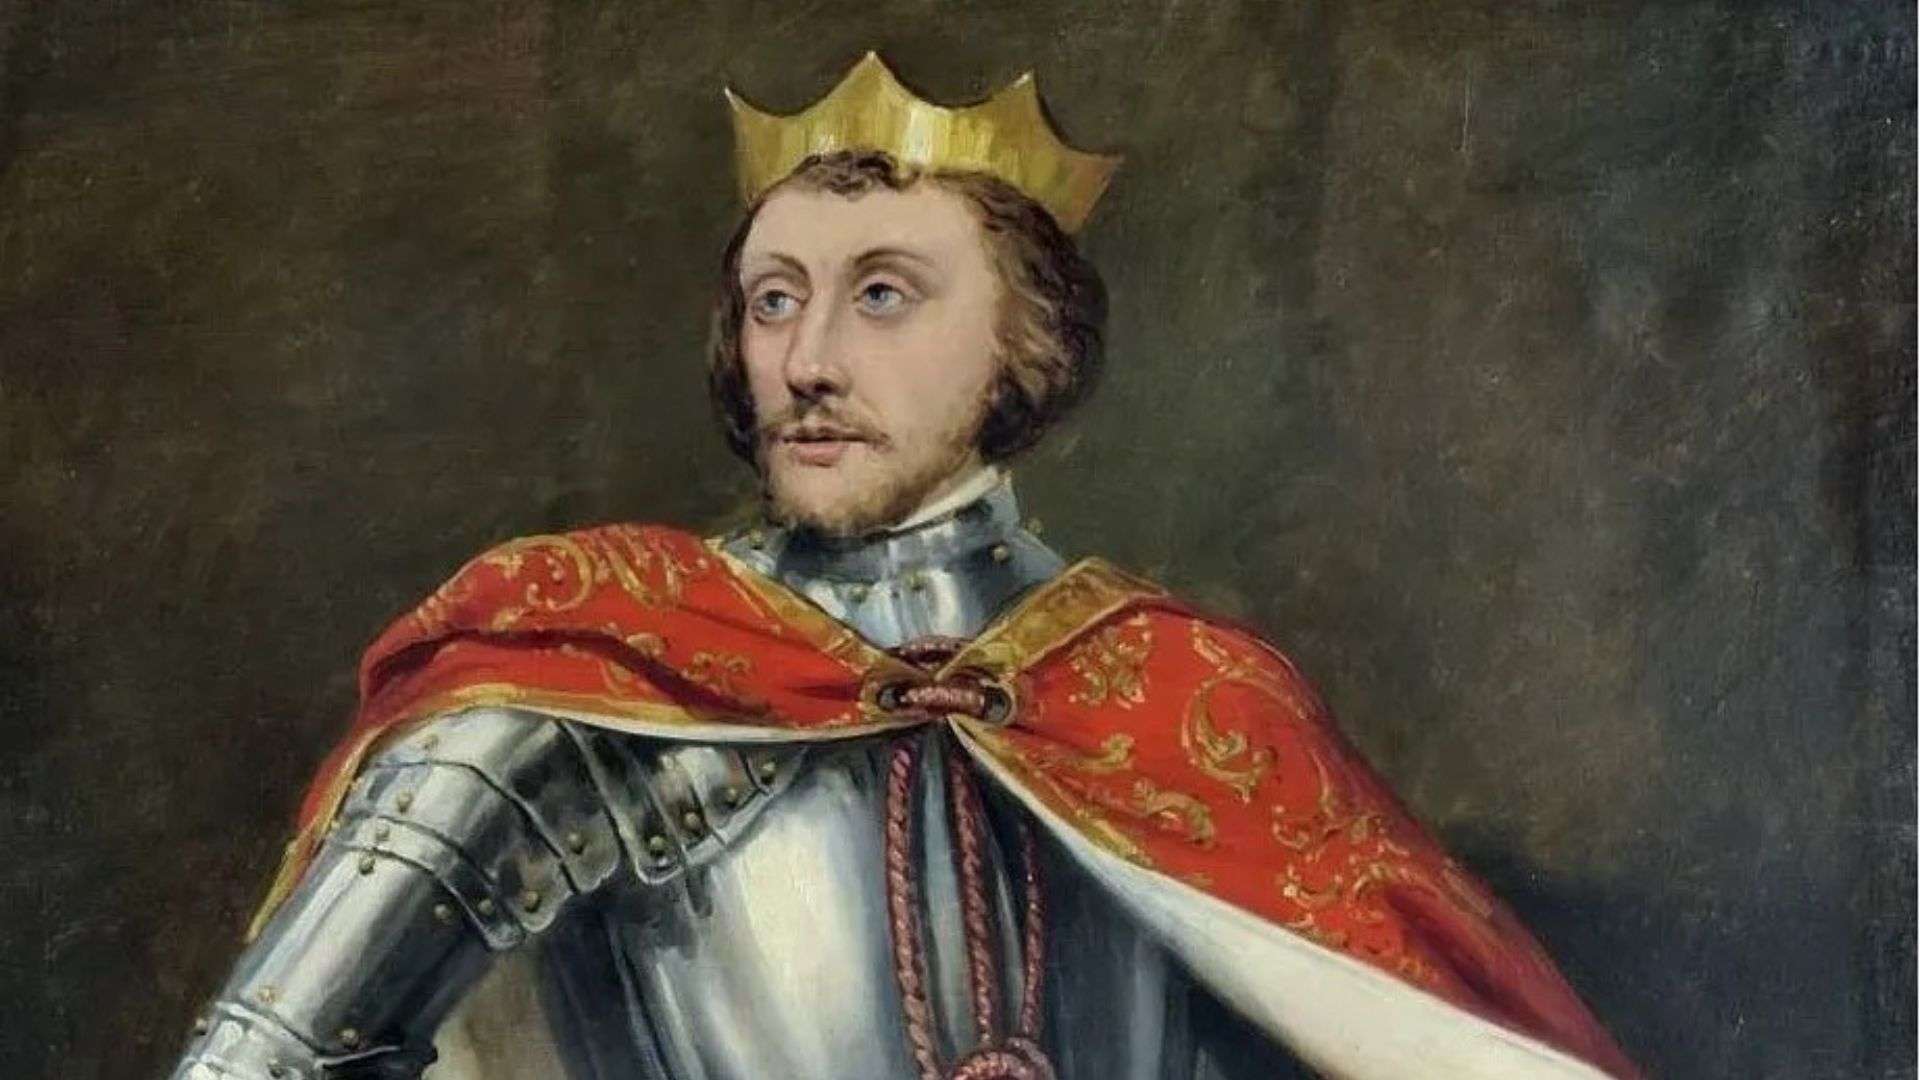 Pedro I de Castilla 'el Cruel' Rey muerto a manos de su hermano bastardo